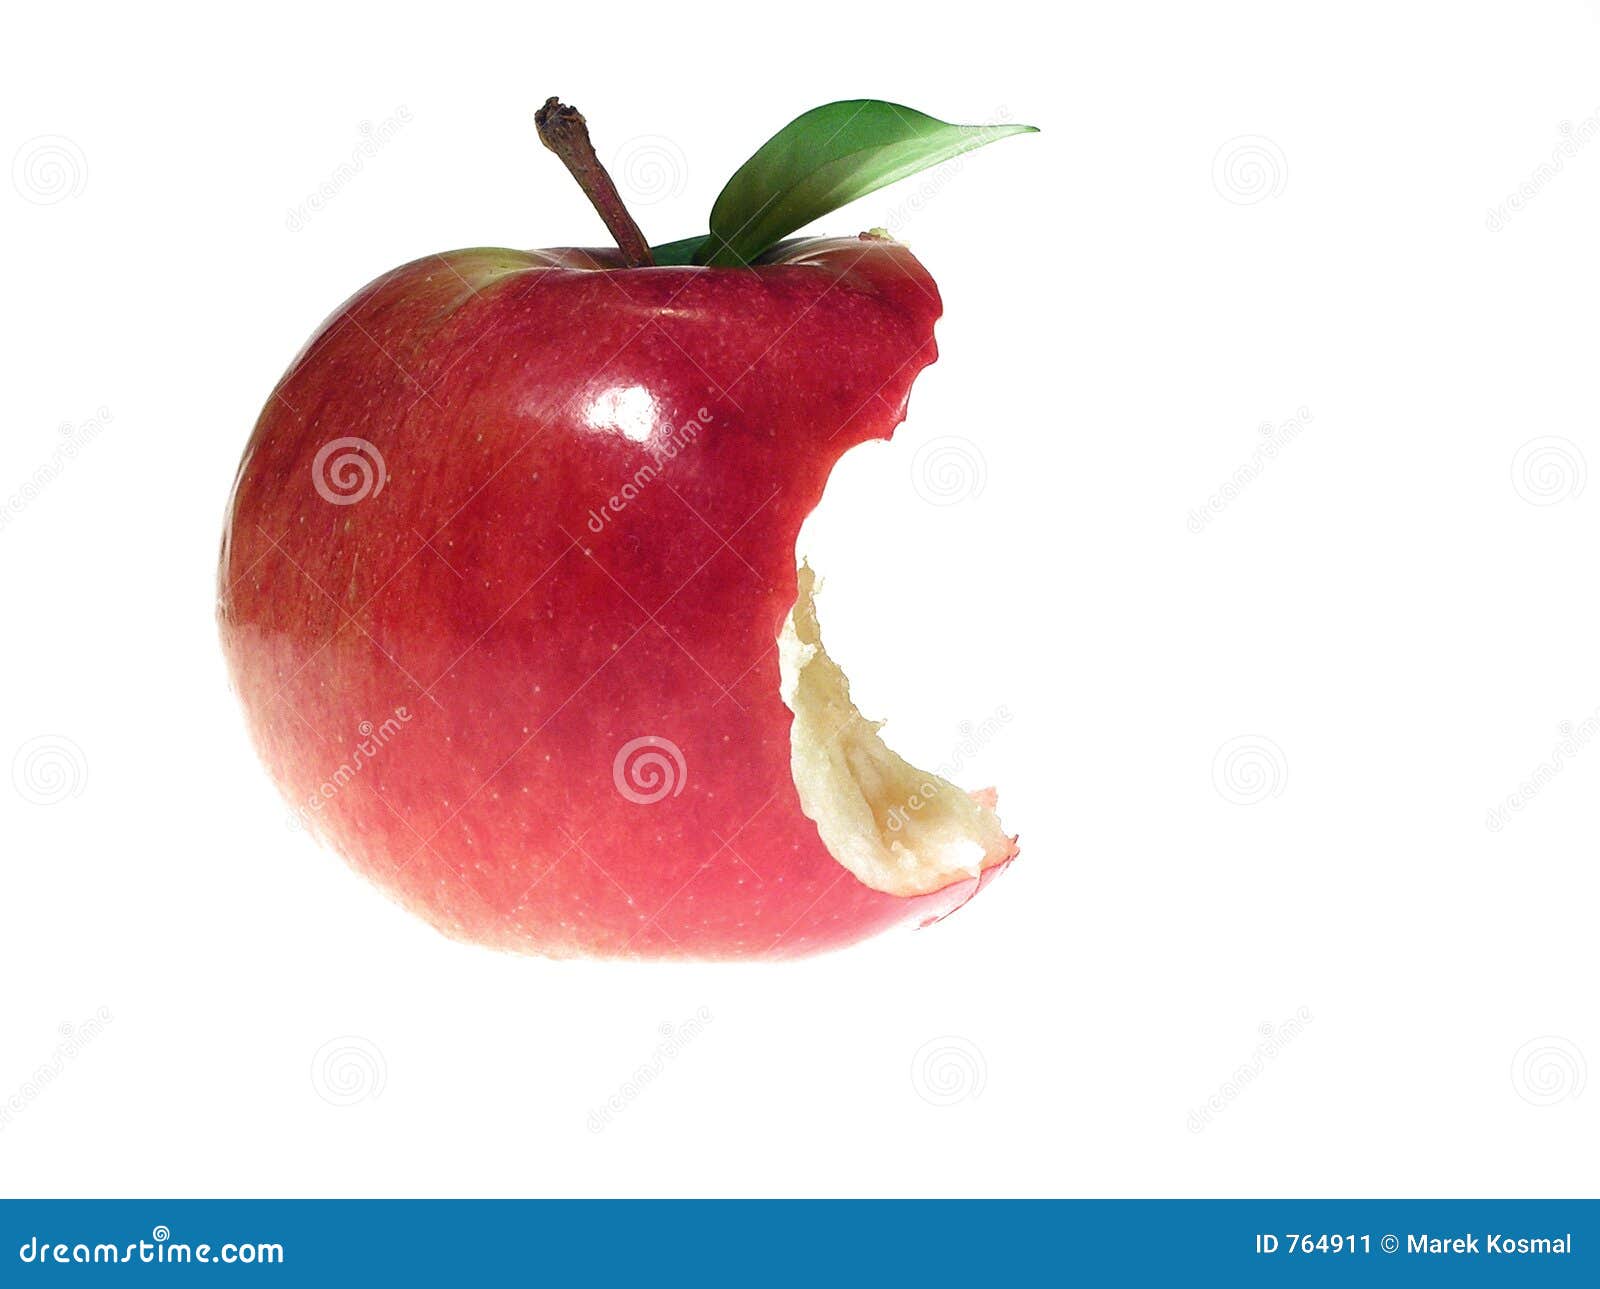 Яблоко откусанное на половину на белом фоне